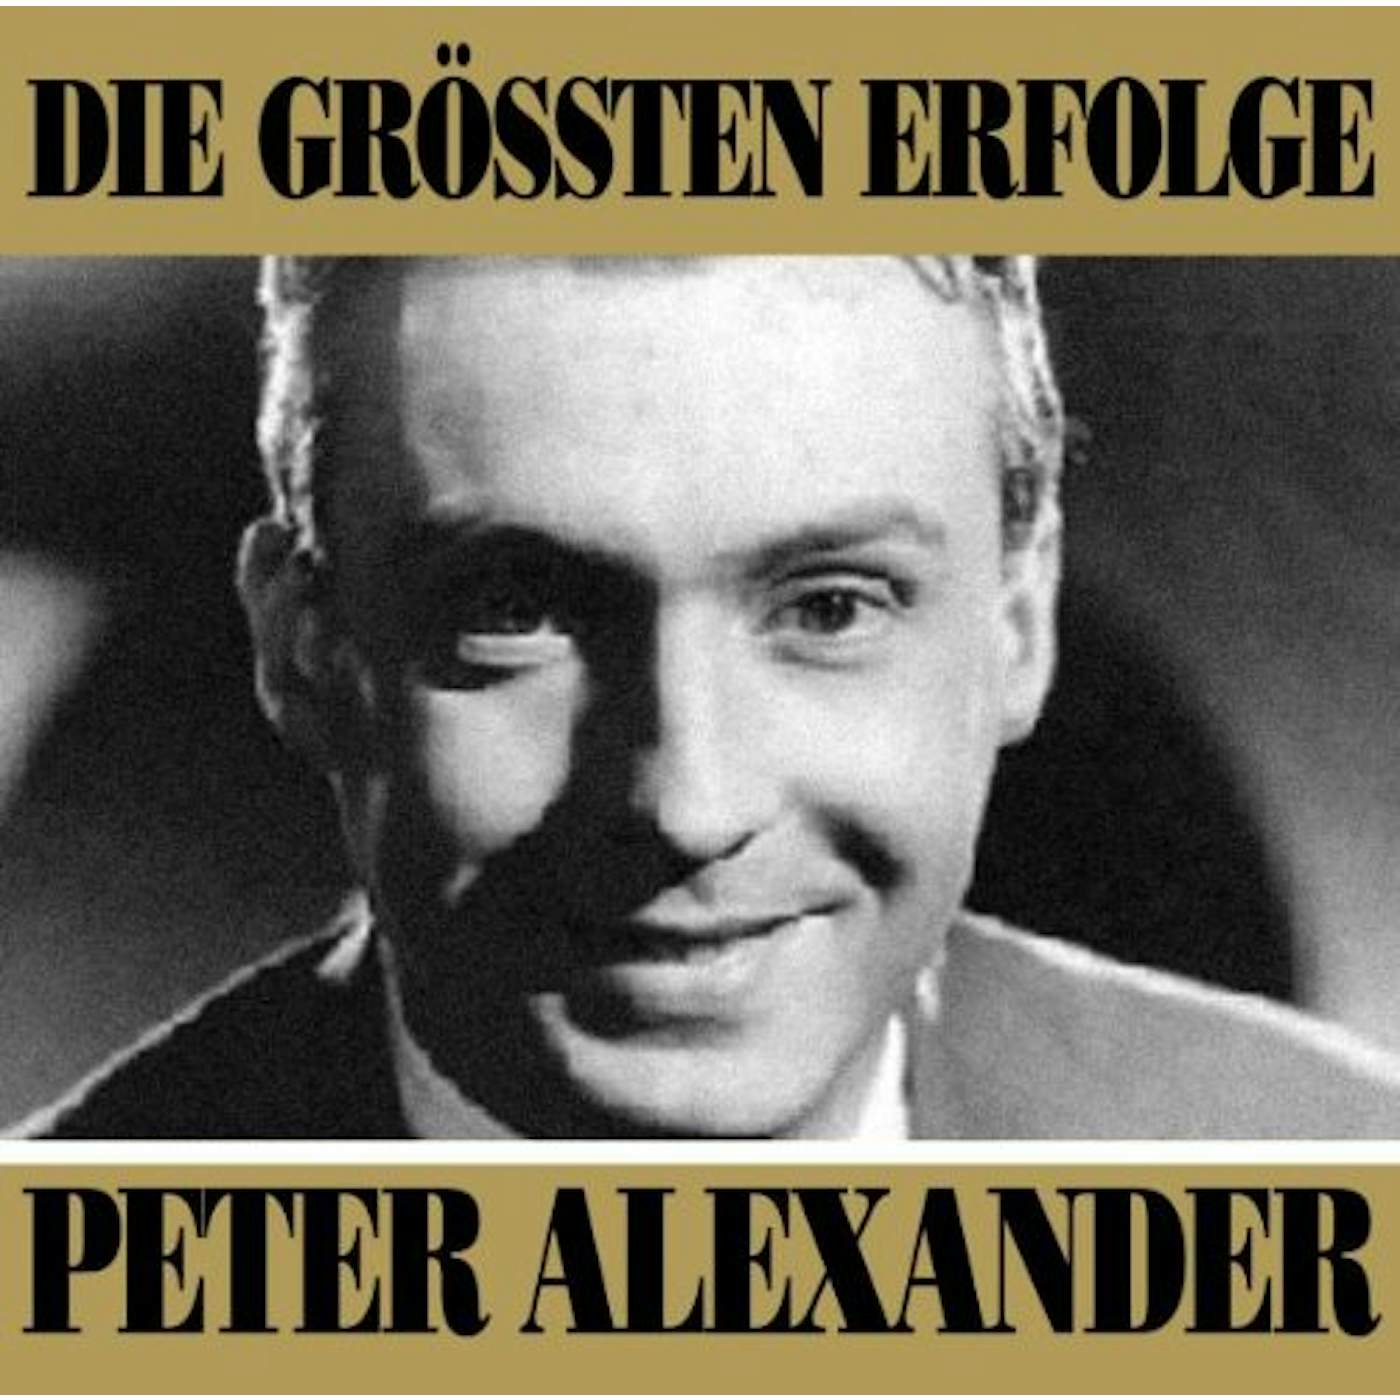 Peter Alexander DIE GROSSTEN ERFOLGE CD